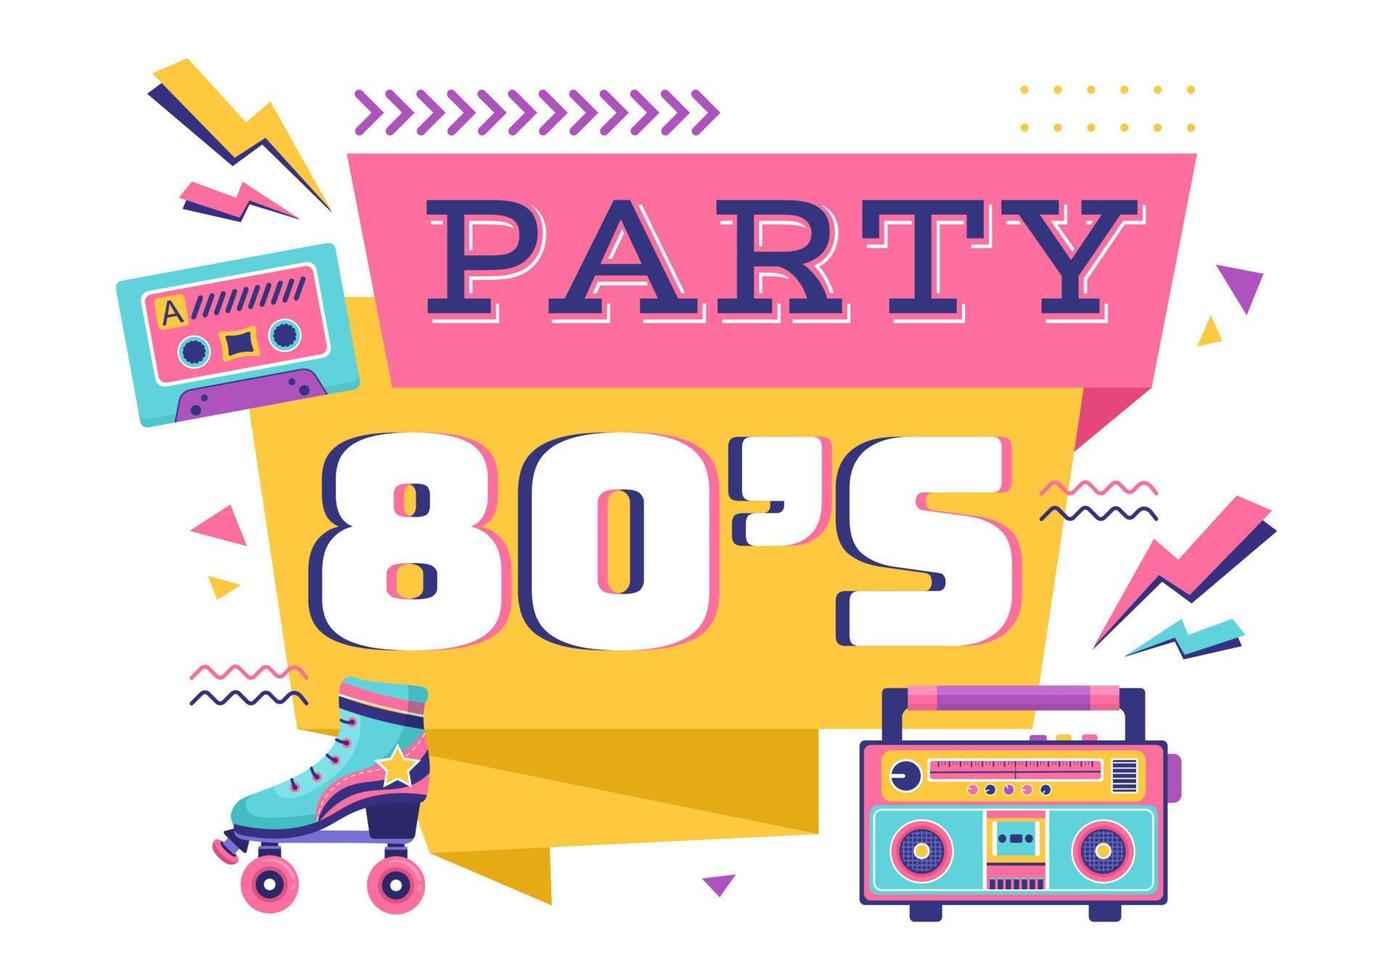 Illustrazione del fondo del fumetto della festa degli anni '80 con musica retrò, lettore di cassette radiofonico del 1980 e discoteca nel design vecchio stile vettore